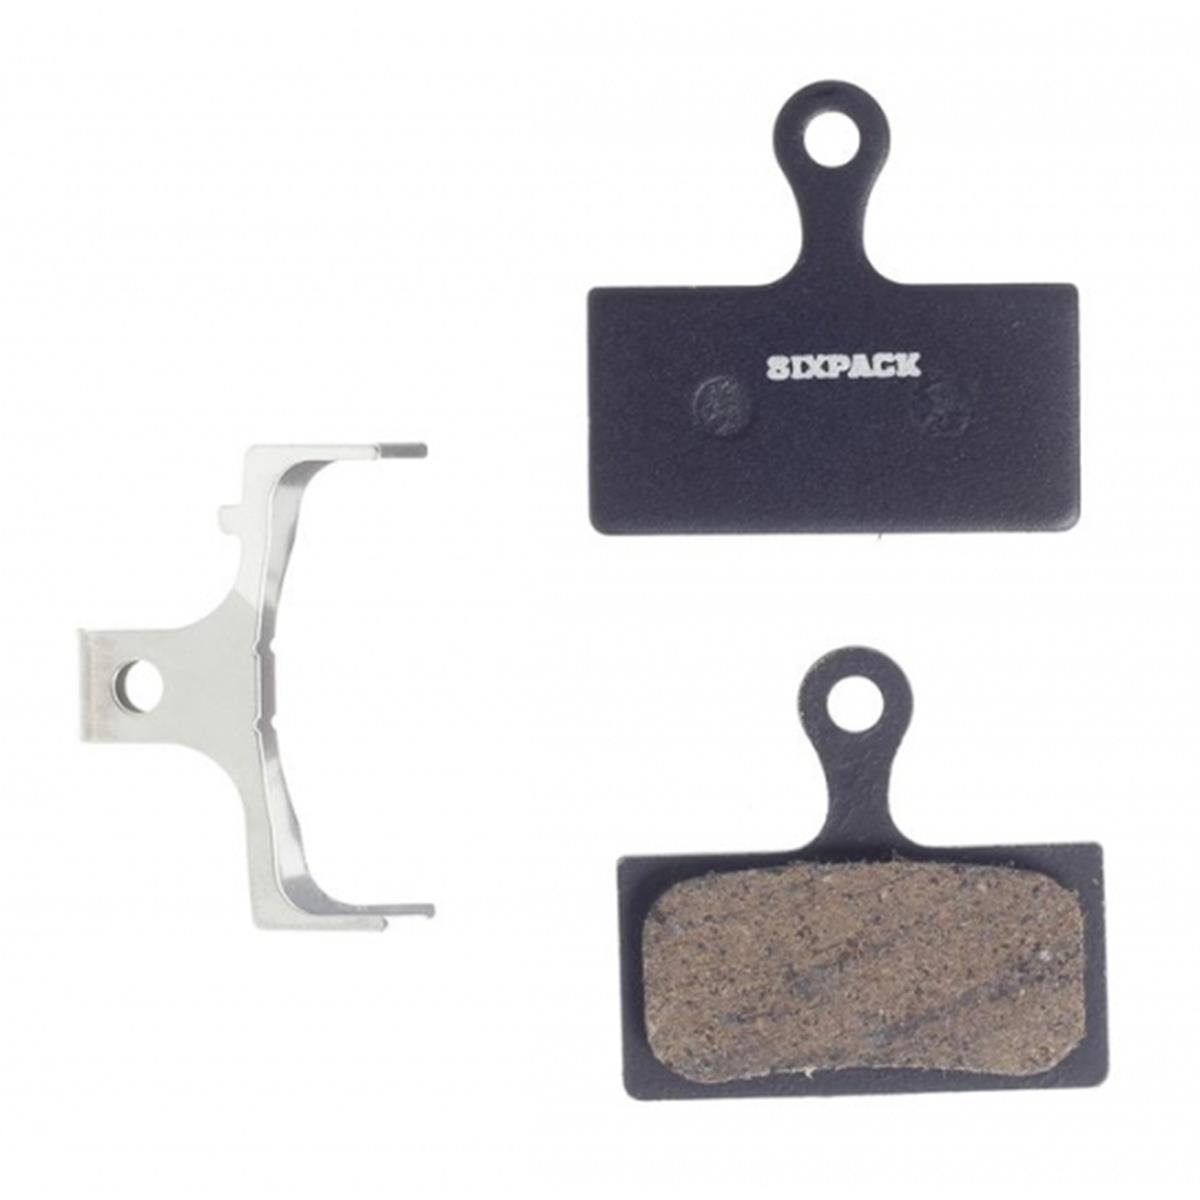 Sixpack MTB Disc Pad Shimano Semi Metallic for Shimano XTR,/XT/SLX compatible) | Offroad